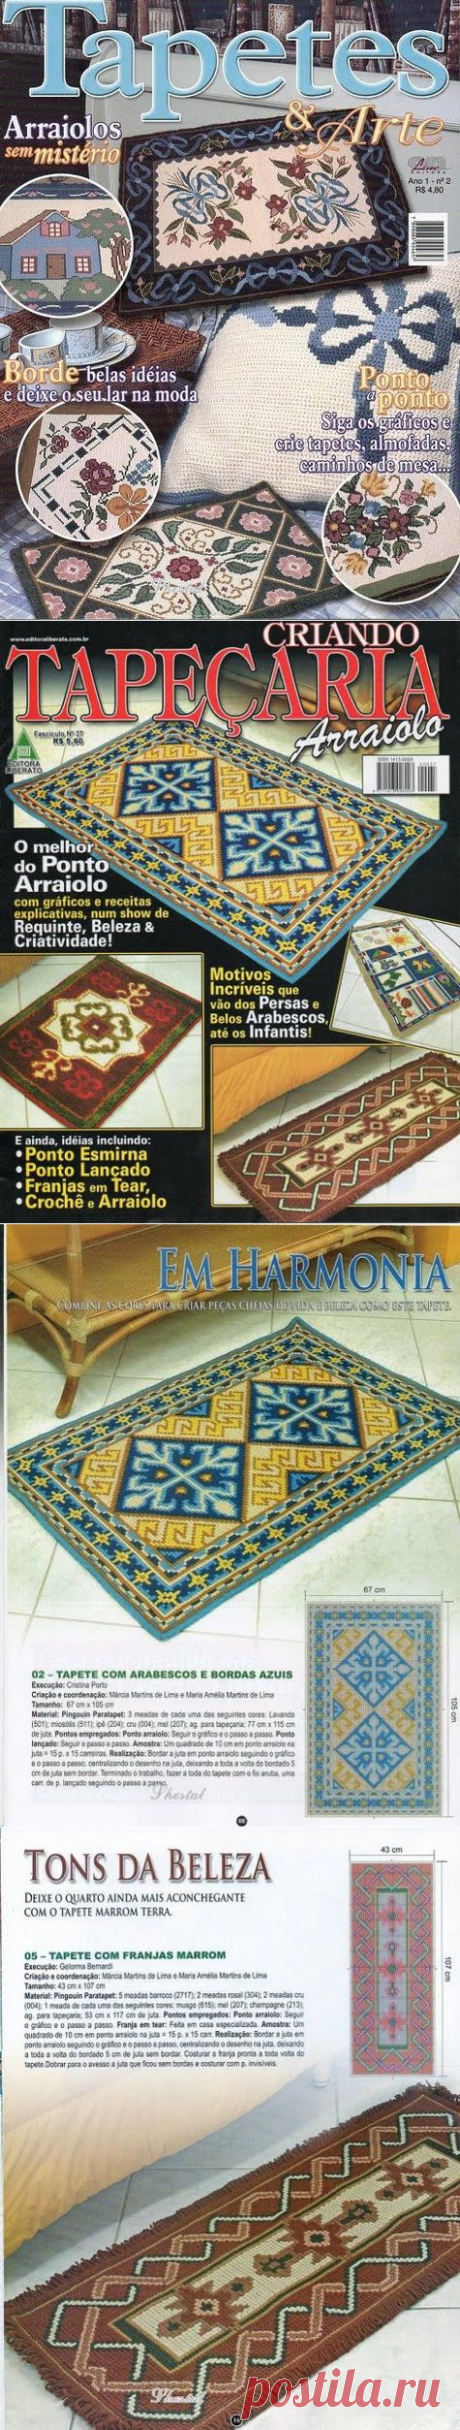 Великолепнейшее пособие для рукодельниц!!! Вышитые коврики со схемами вышивки. Их можно использовать и для вязания.